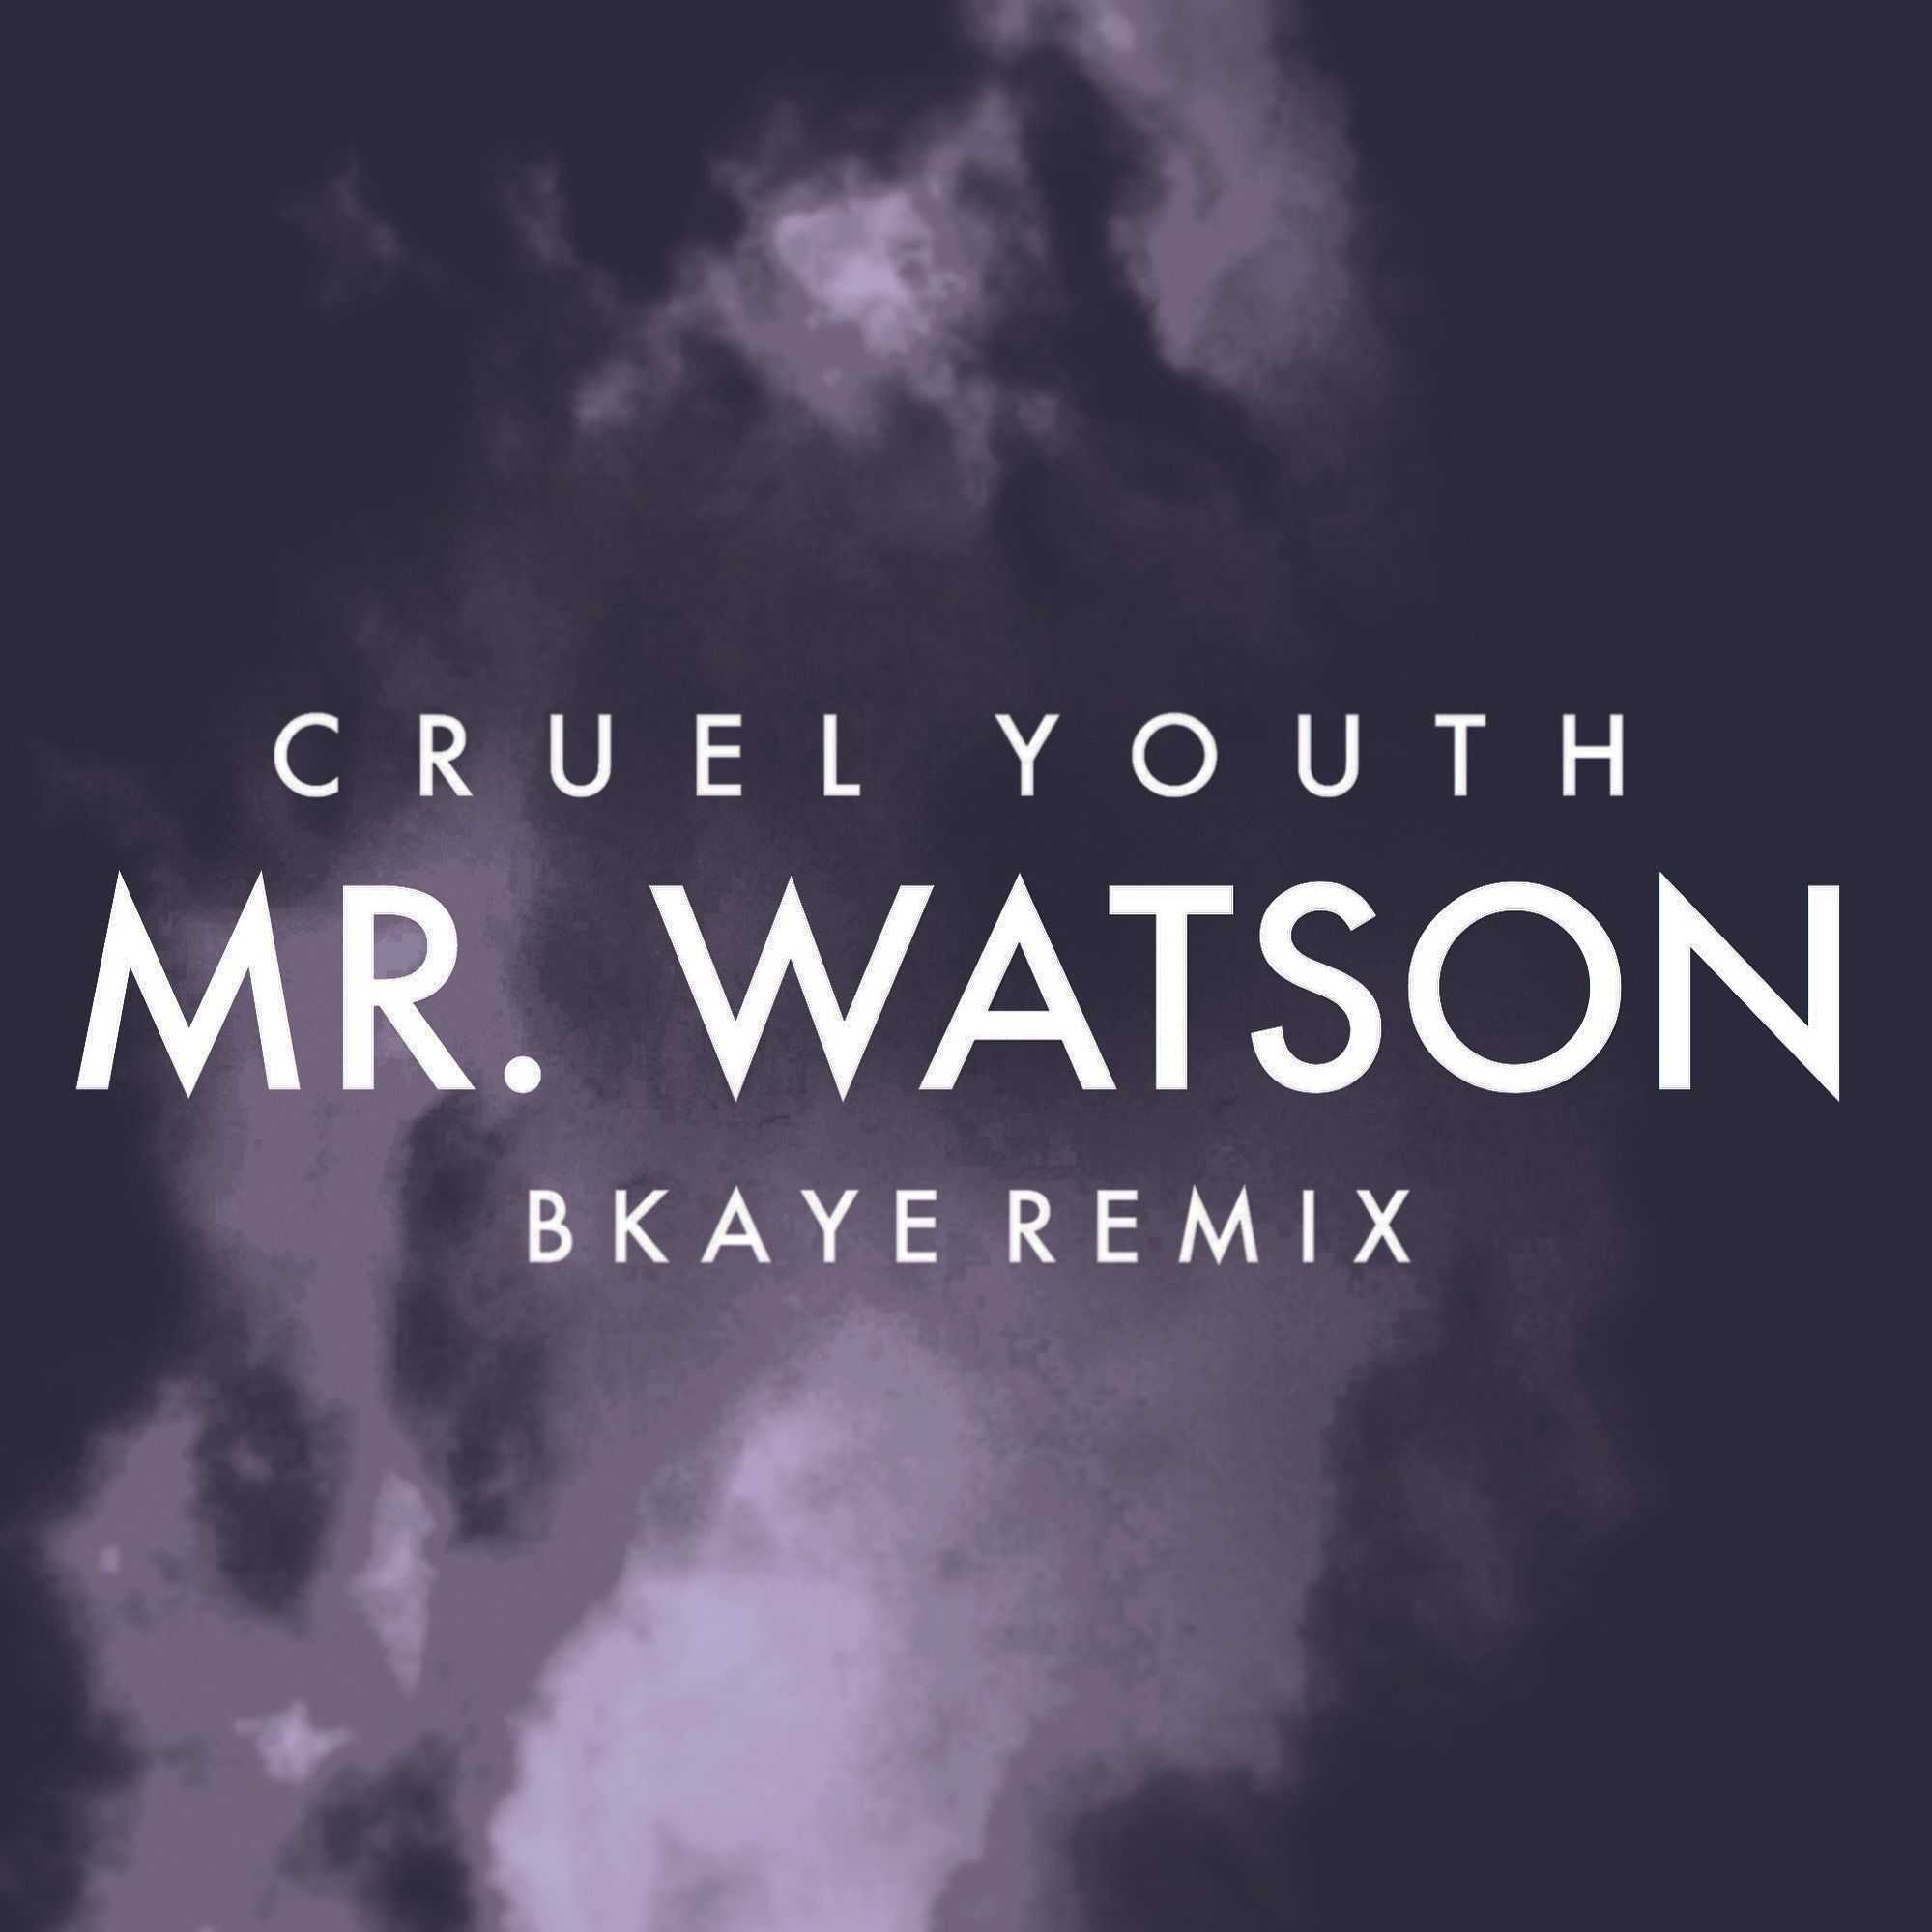 Cruel Youth - Mr. Watson (BKAYE Remix) [몽환, 맑음, 흥함]